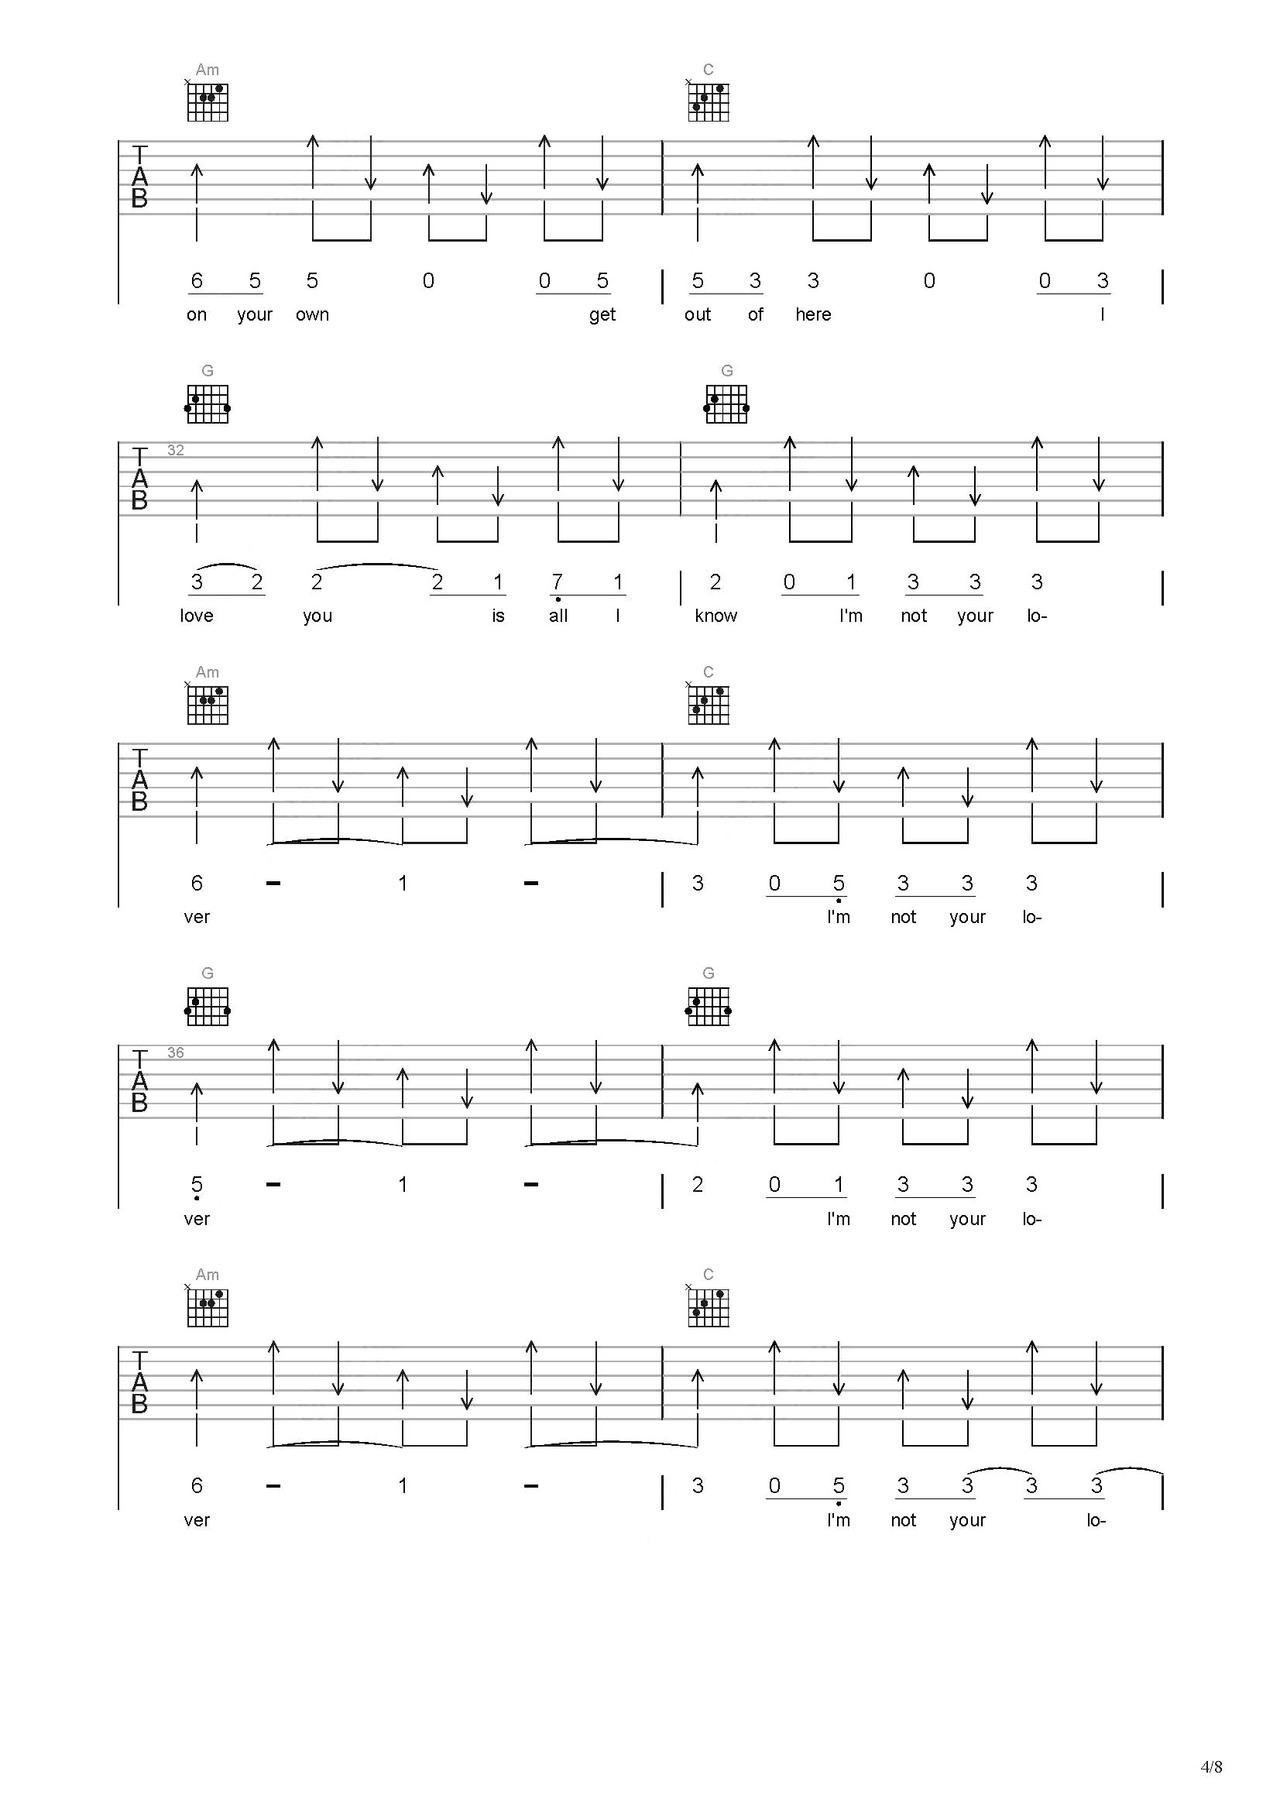 十七吉他谱 - SHE - 吉他弹唱谱 - 和弦谱 - 琴谱网